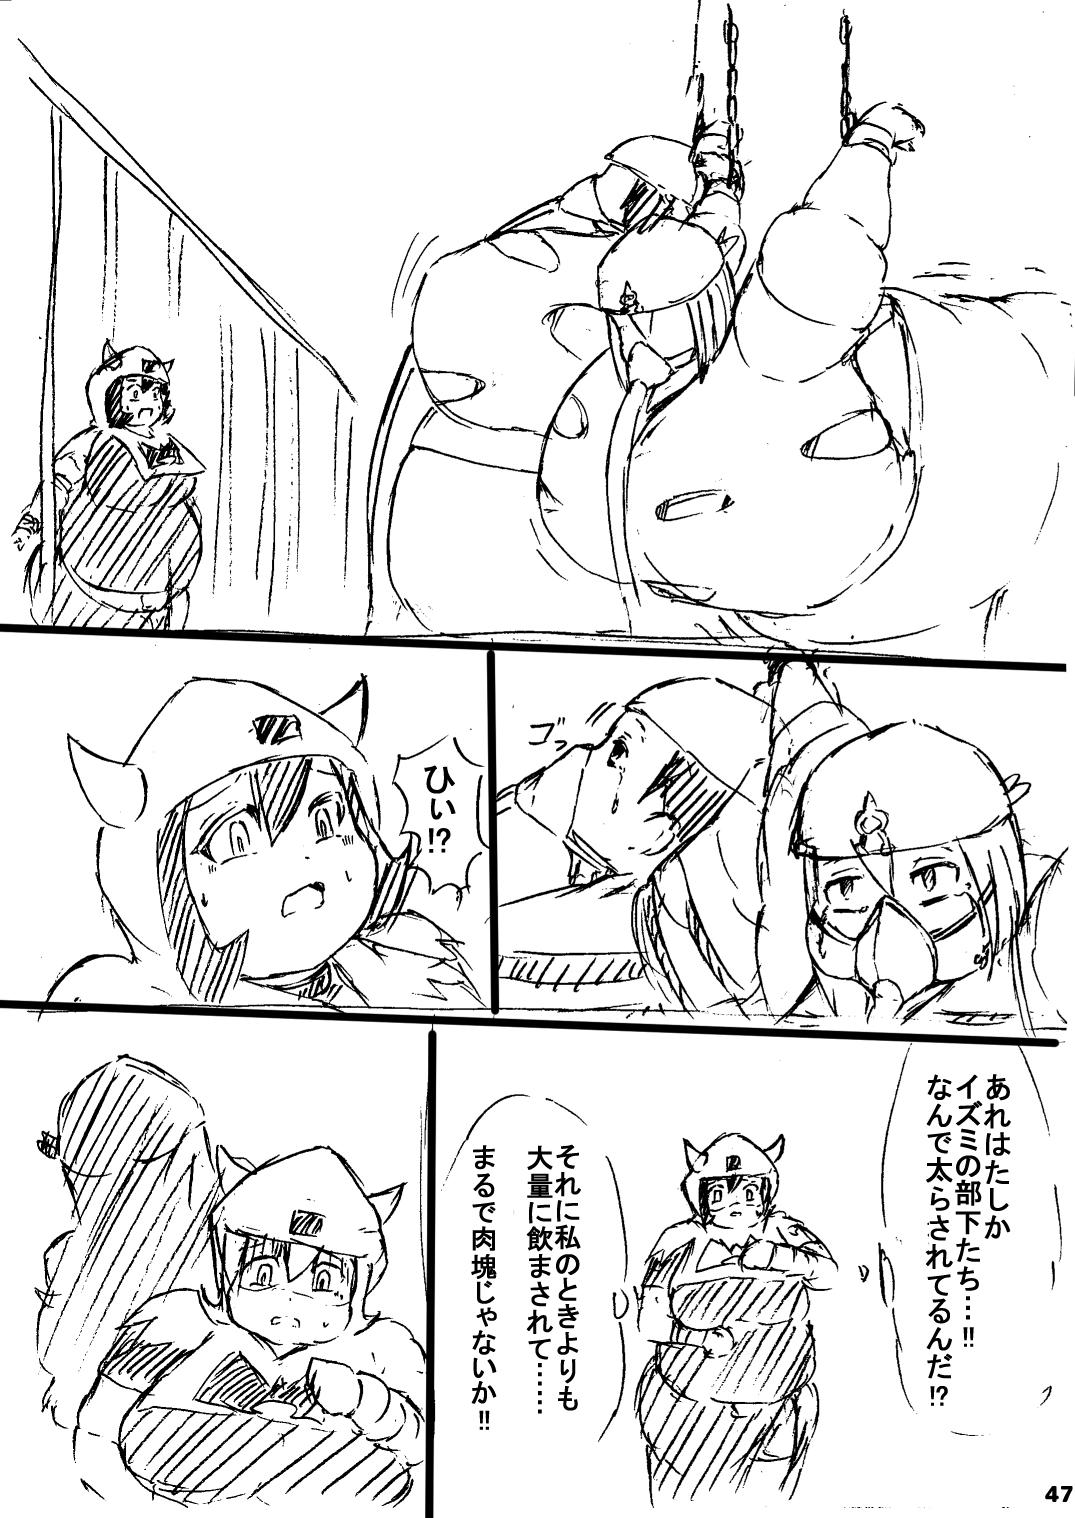 ポケスペカガリ肥満化漫画 45